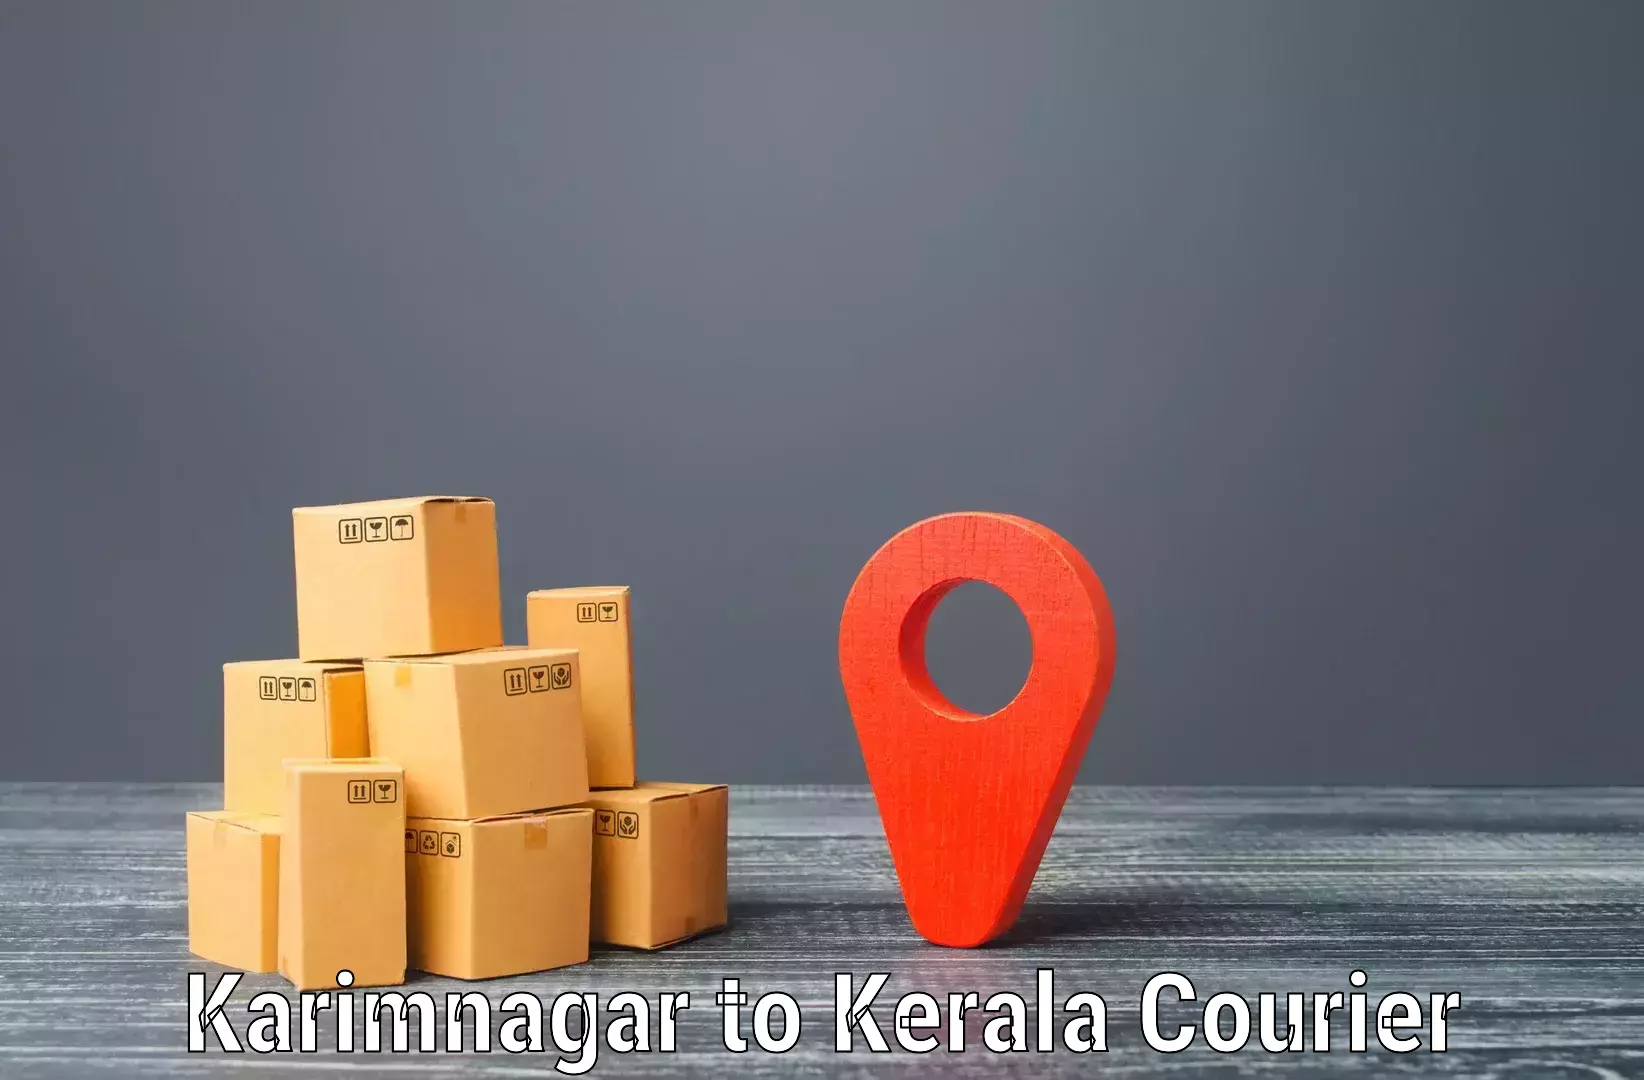 Global parcel delivery Karimnagar to Cochin Port Kochi